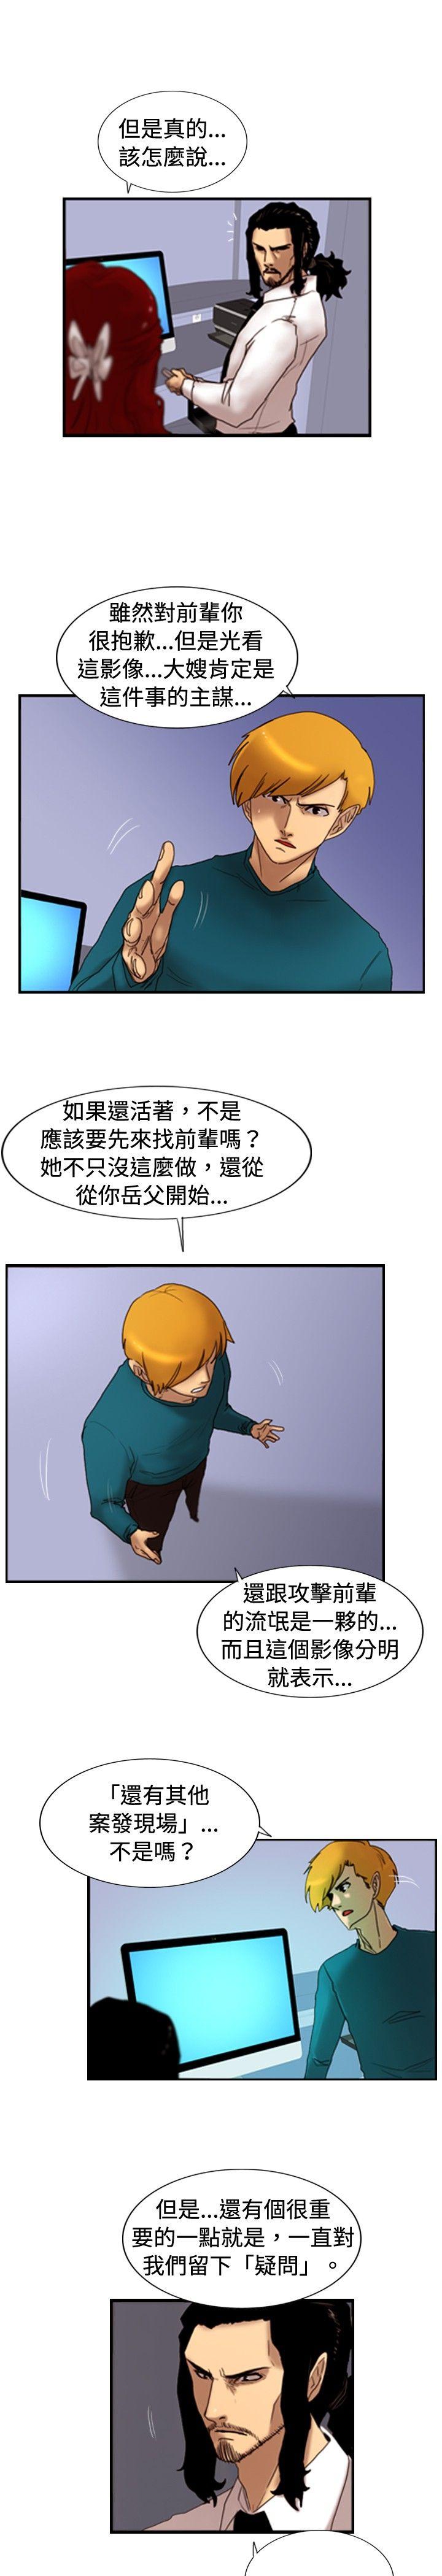 韩国污漫画 覺醒 第25话叛徒 9